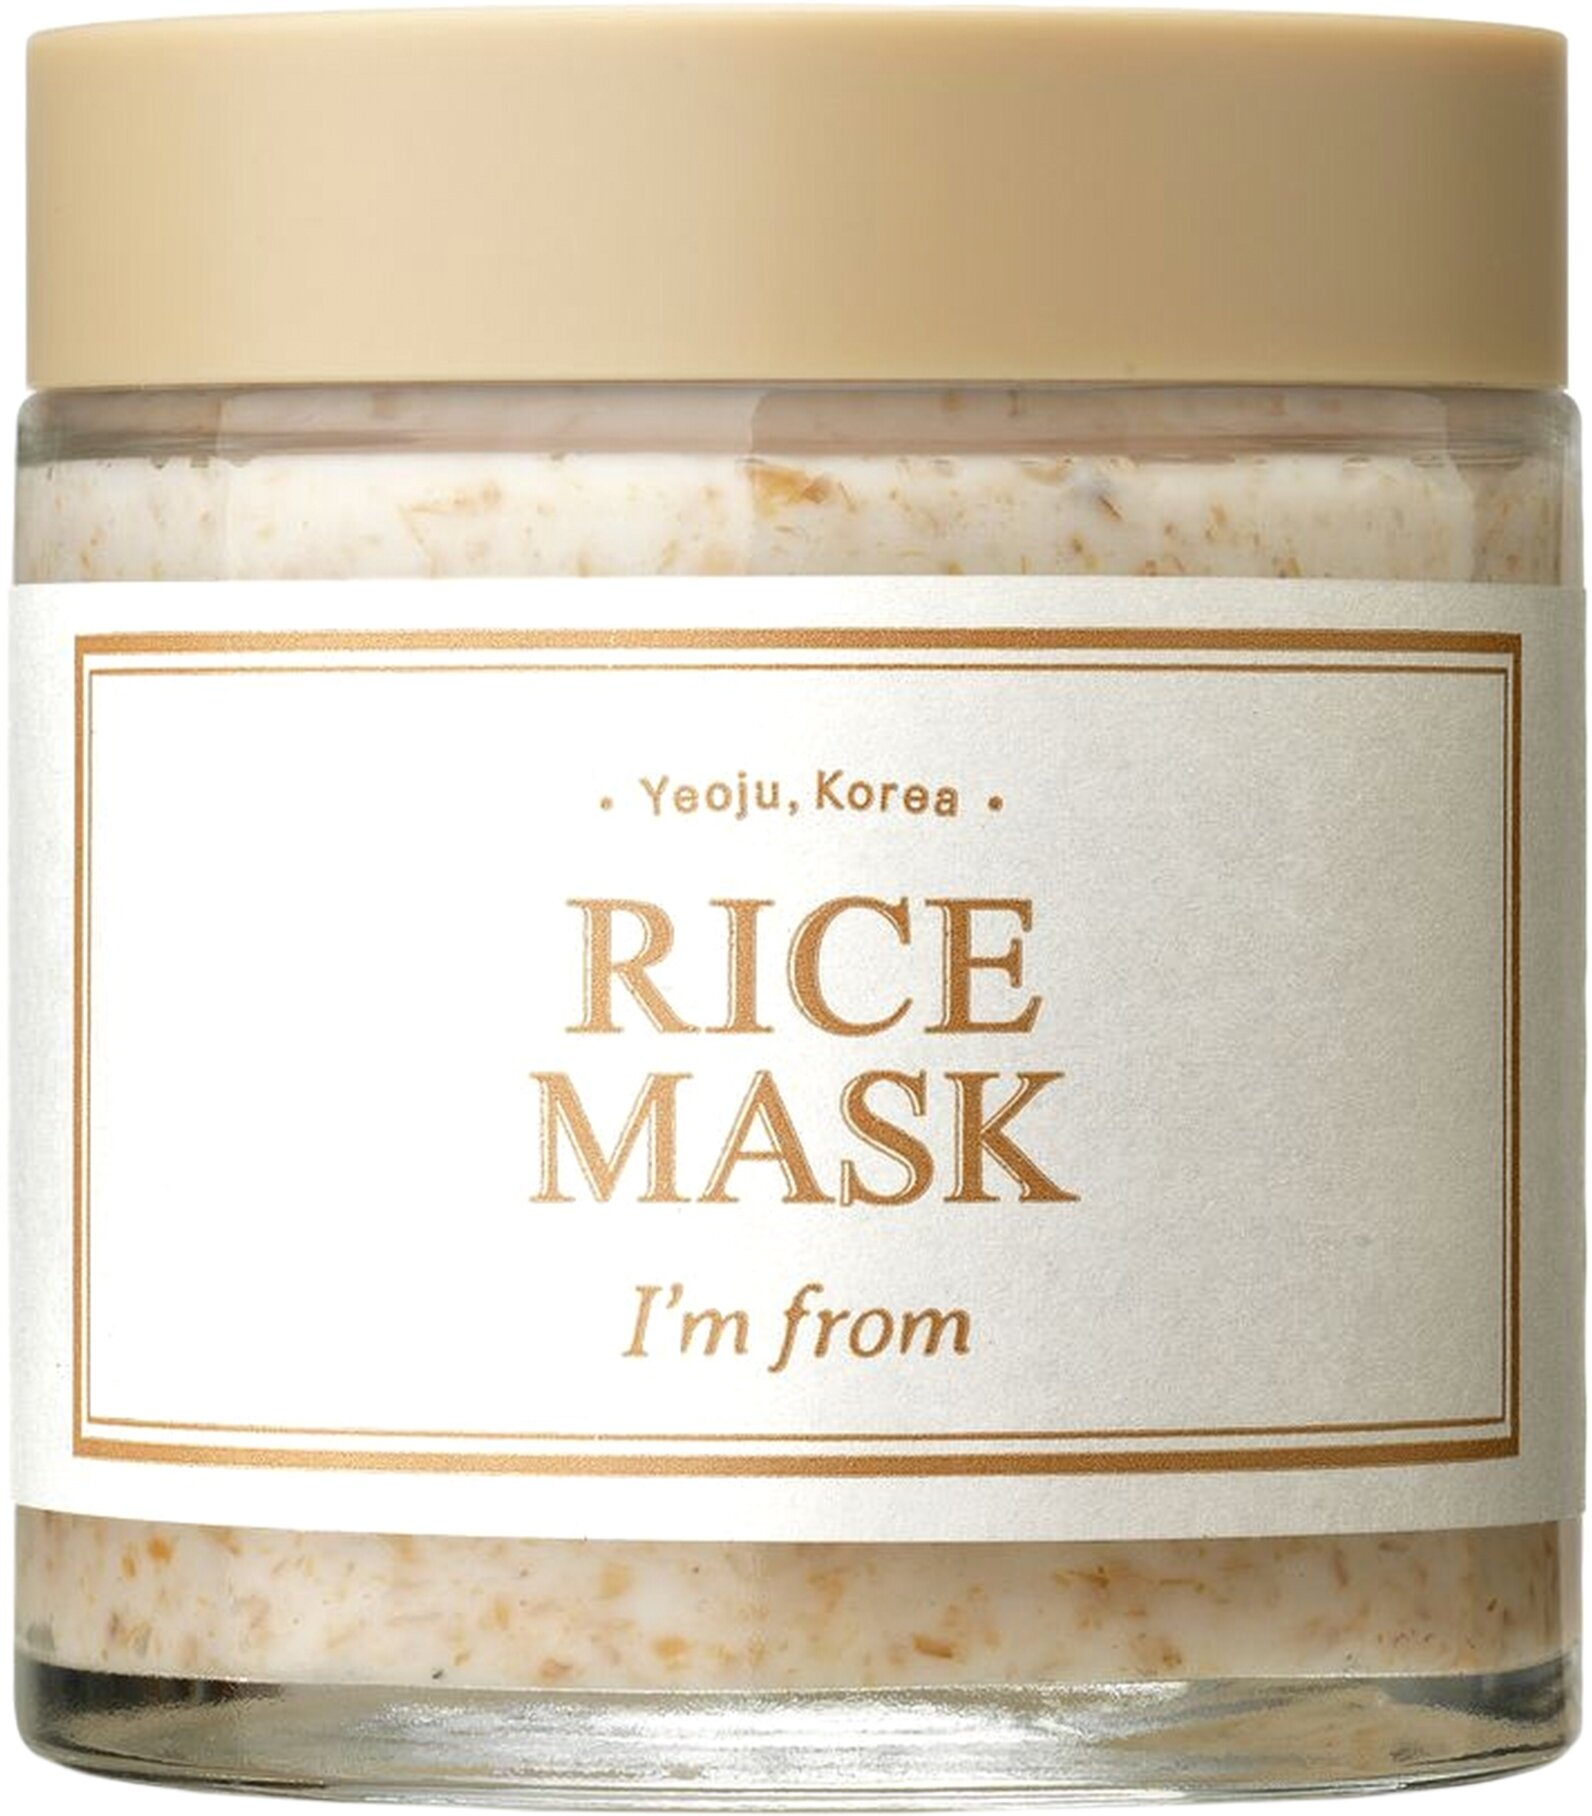 I’m from Смягчающая маска-скраб для лица с рисовыми отрубями Rice Mask 110 гр